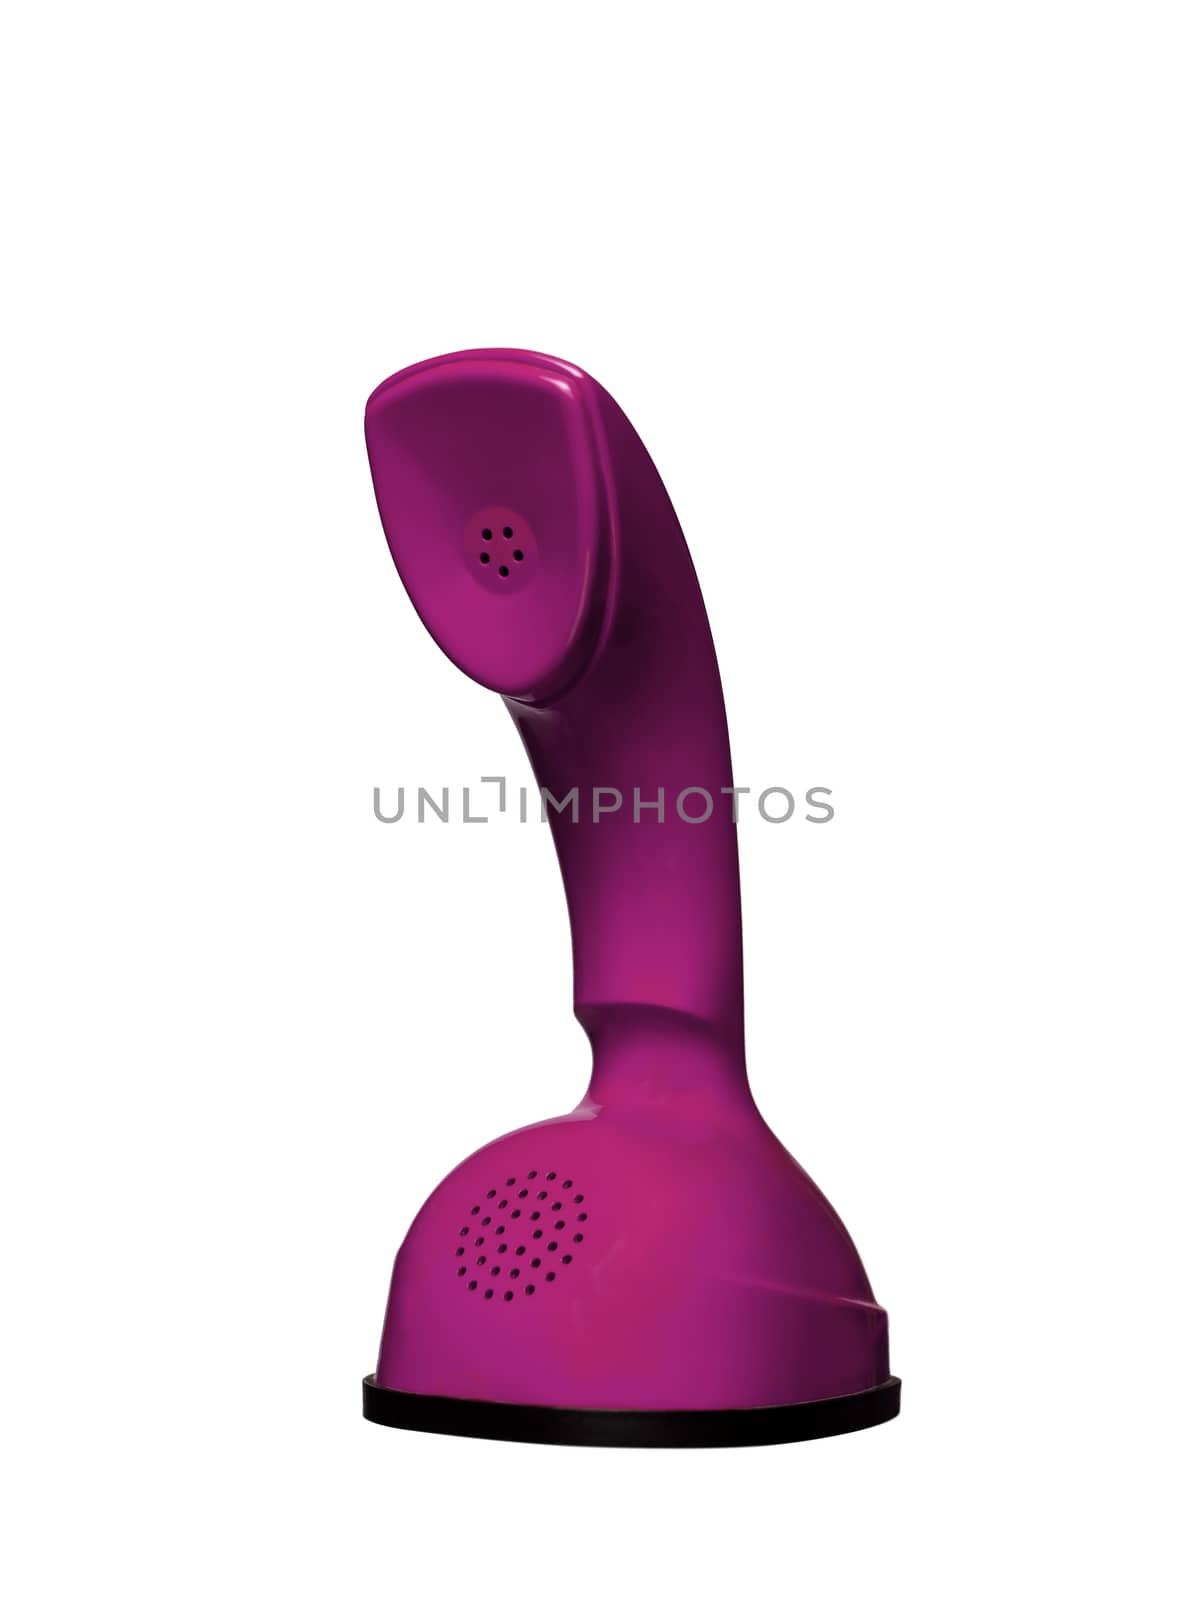 Pink Vintage Cobra Telephone isolated on white background by gemenacom